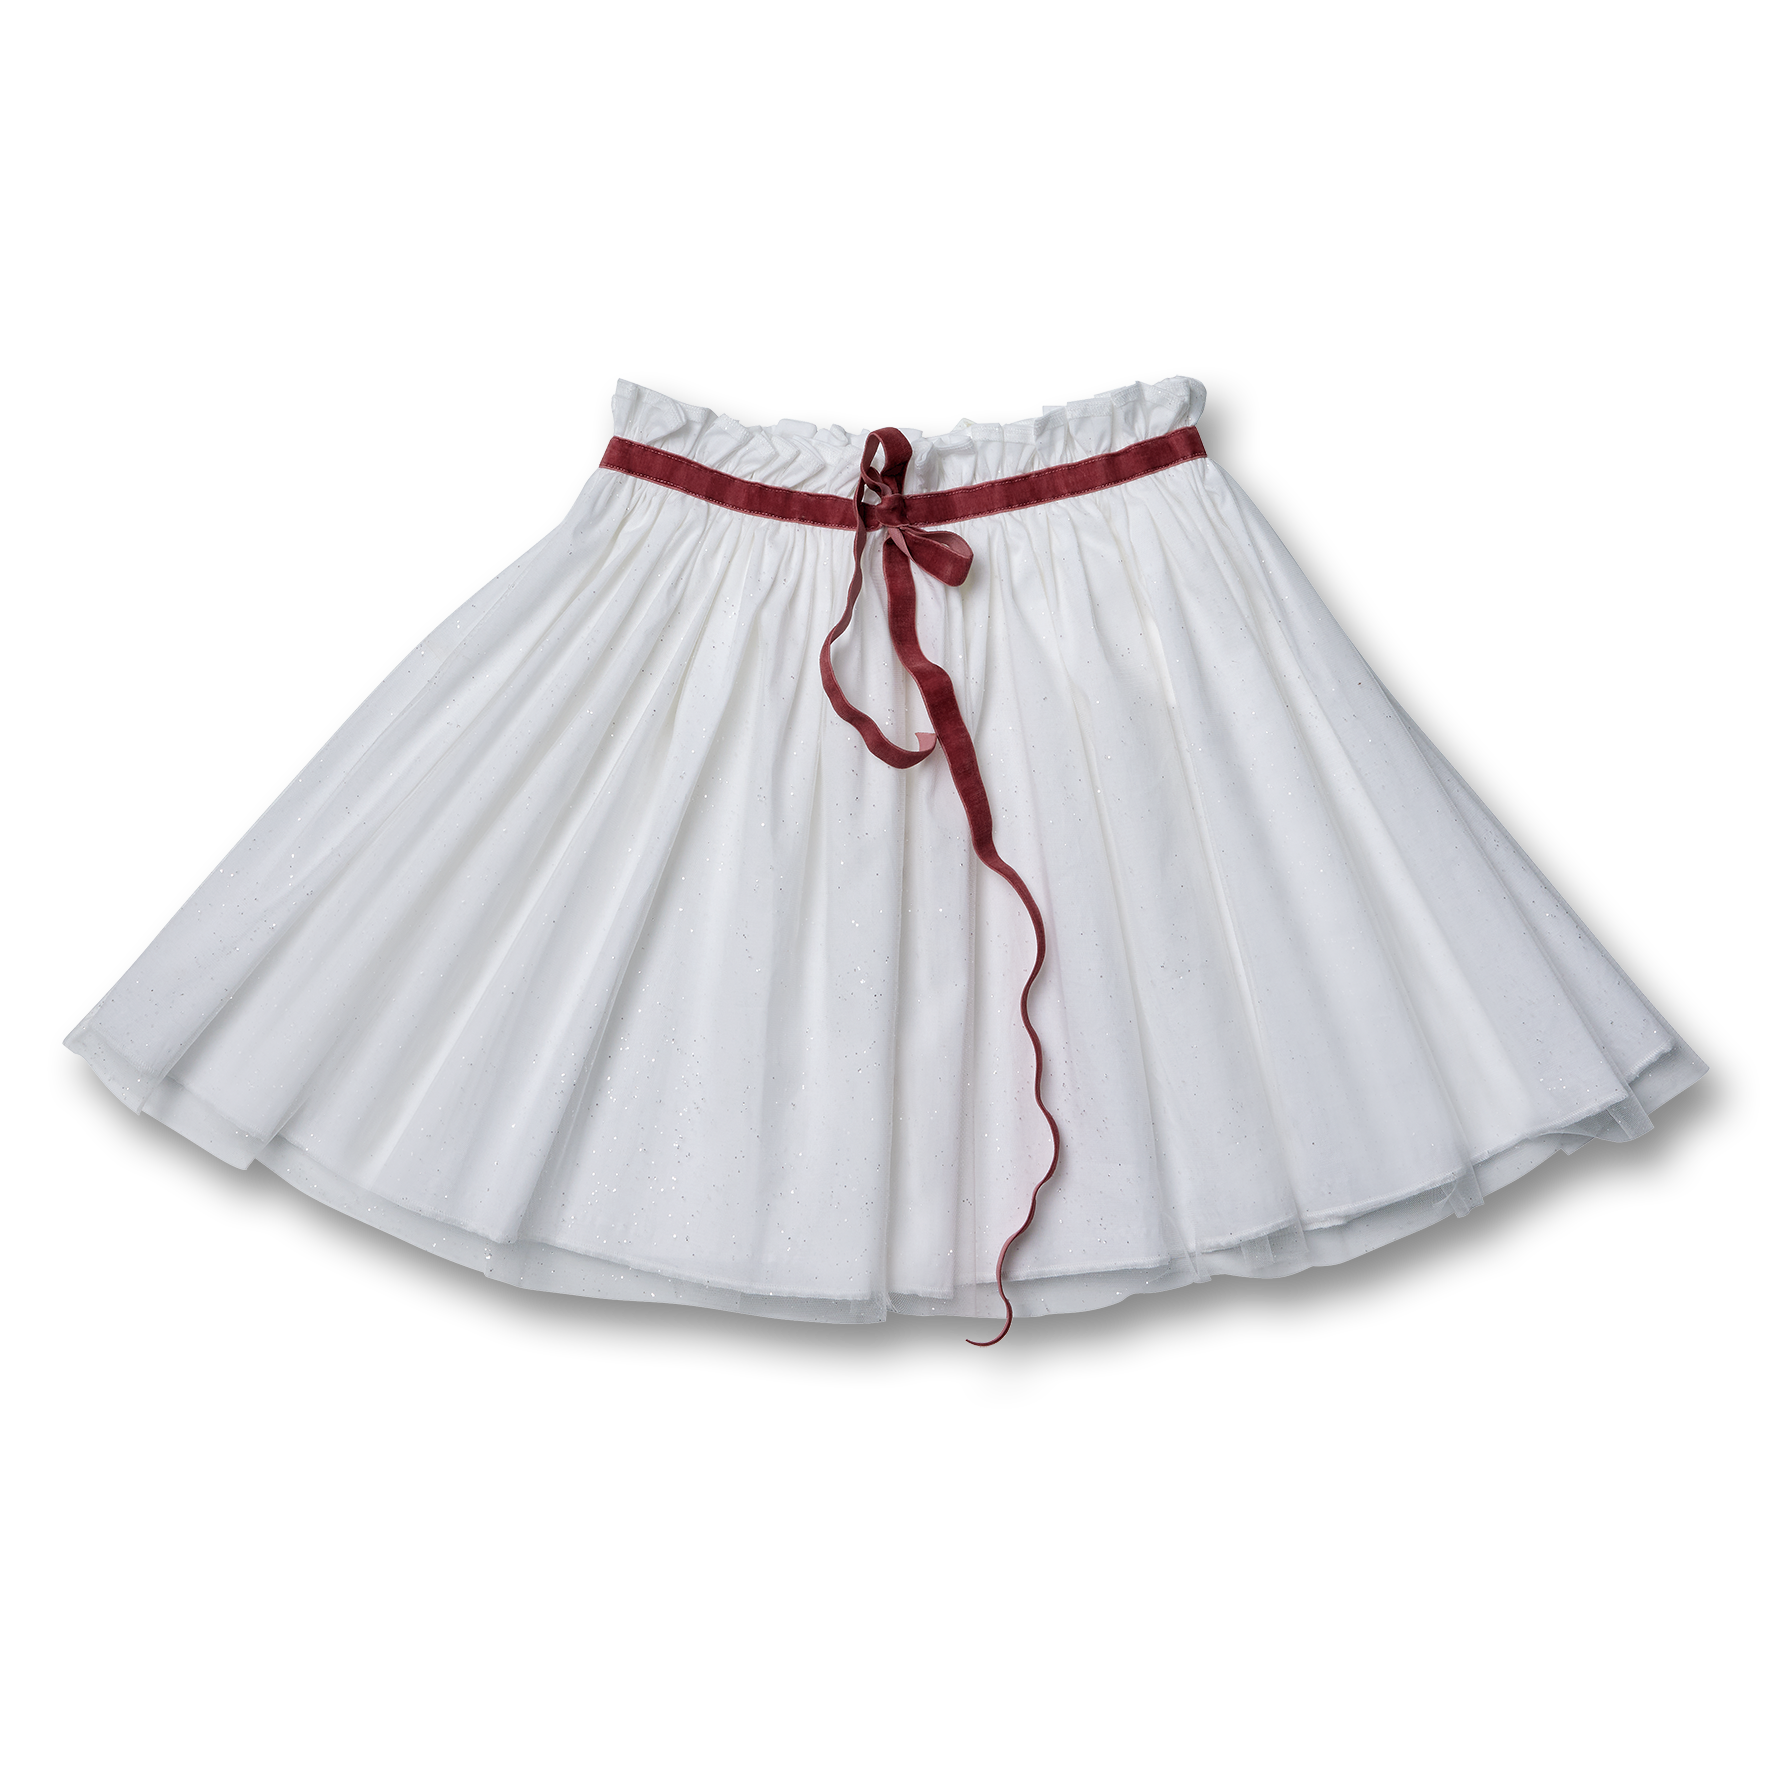 Velvet Ribbon Belt Tutu Skirt